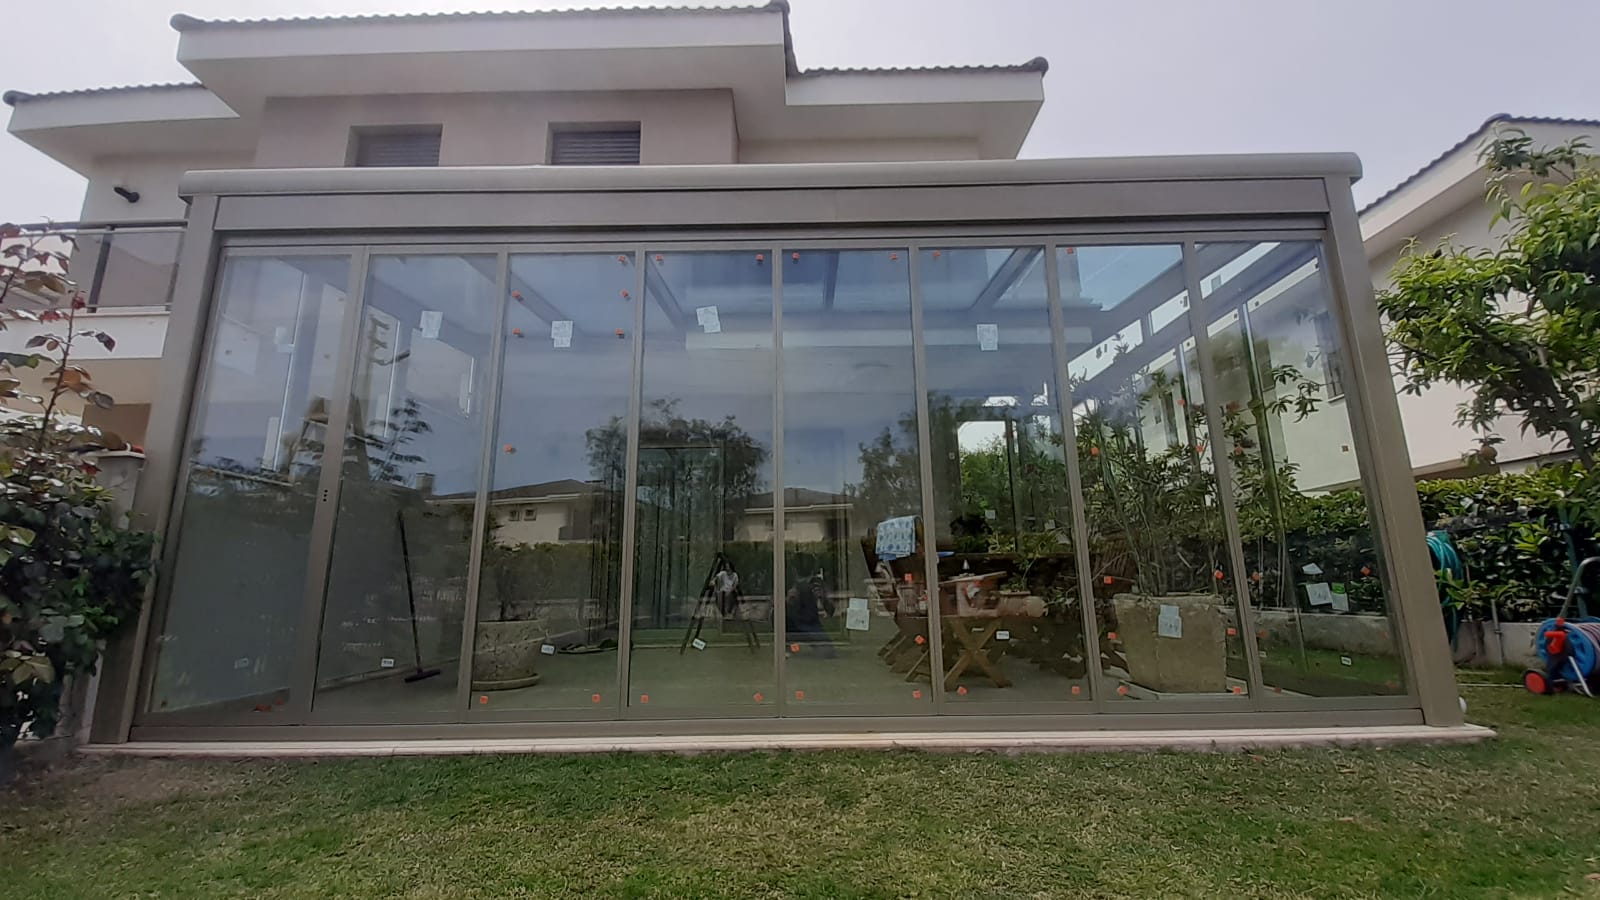 İzmir Çeşme Alaçatı'daki müşterimizin villasına uyguladığımız Kış bahçesi (Veranda) ve Albert Genau marka ısıcamlı katlanır cam sistemi